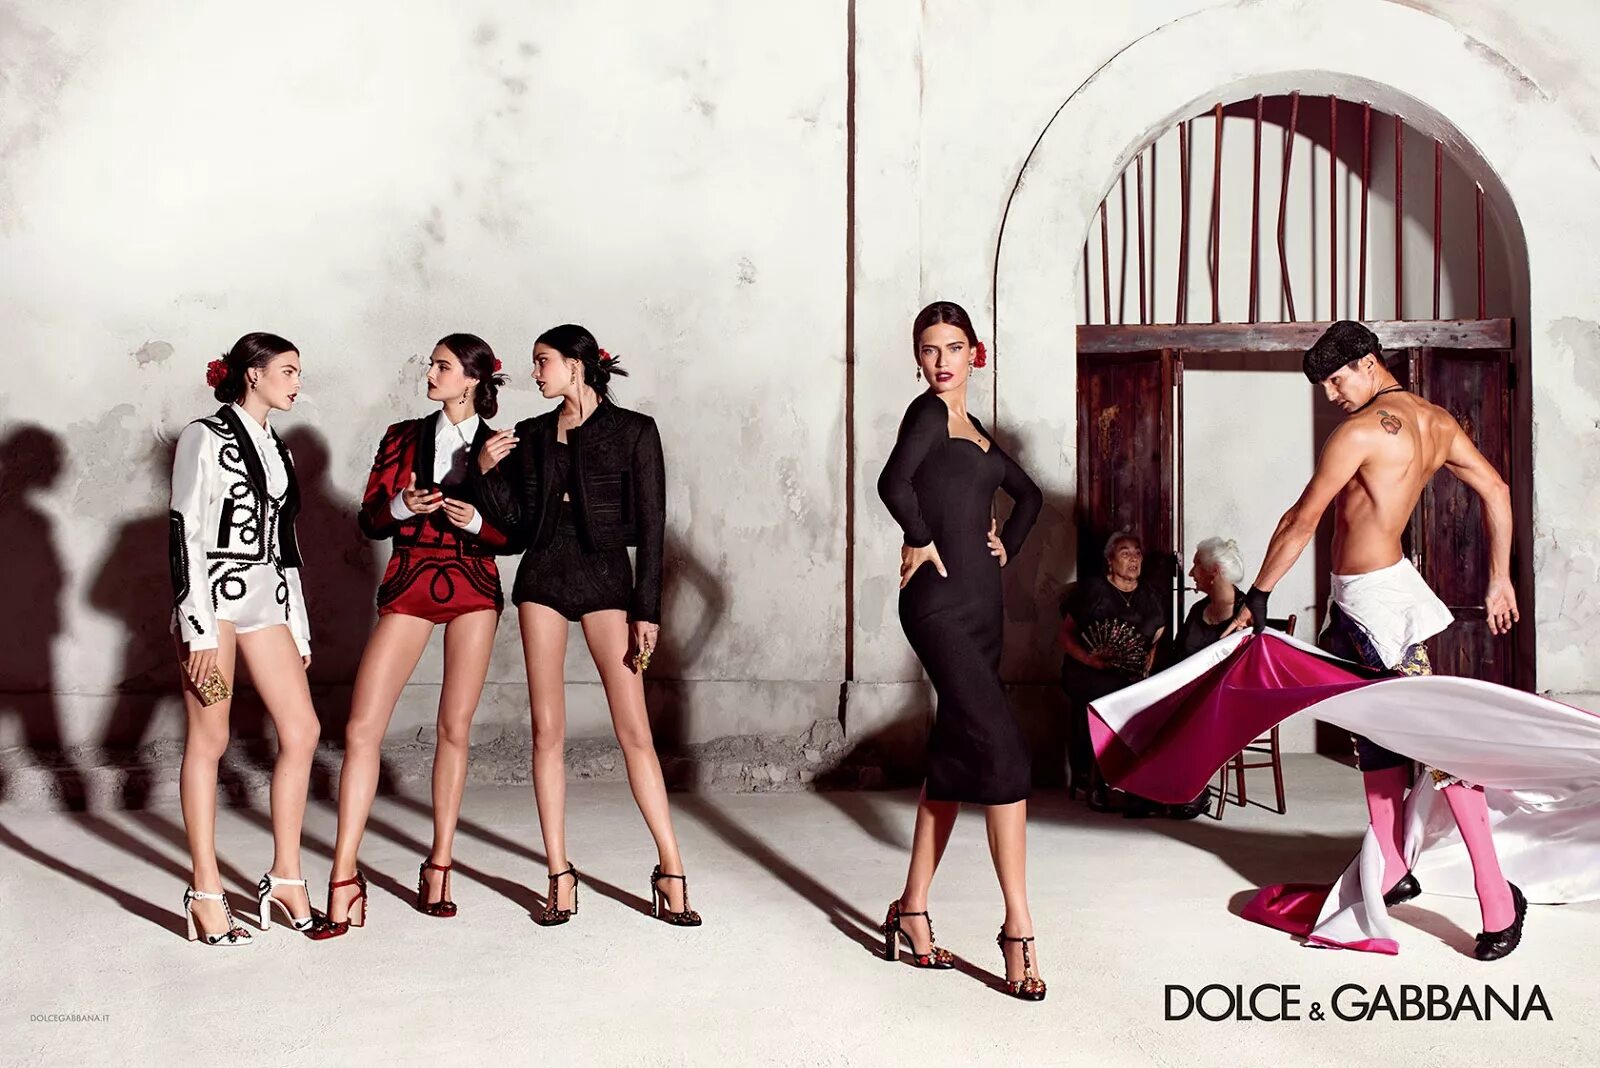 Dolce Gabbana 2021 Бьянка Балти. Бьянка Балти Дольче Габбана семья. Рекламный кампейн Дольче Габбана. Дольче Габбана рекламная компания. Реклама итальянское качество